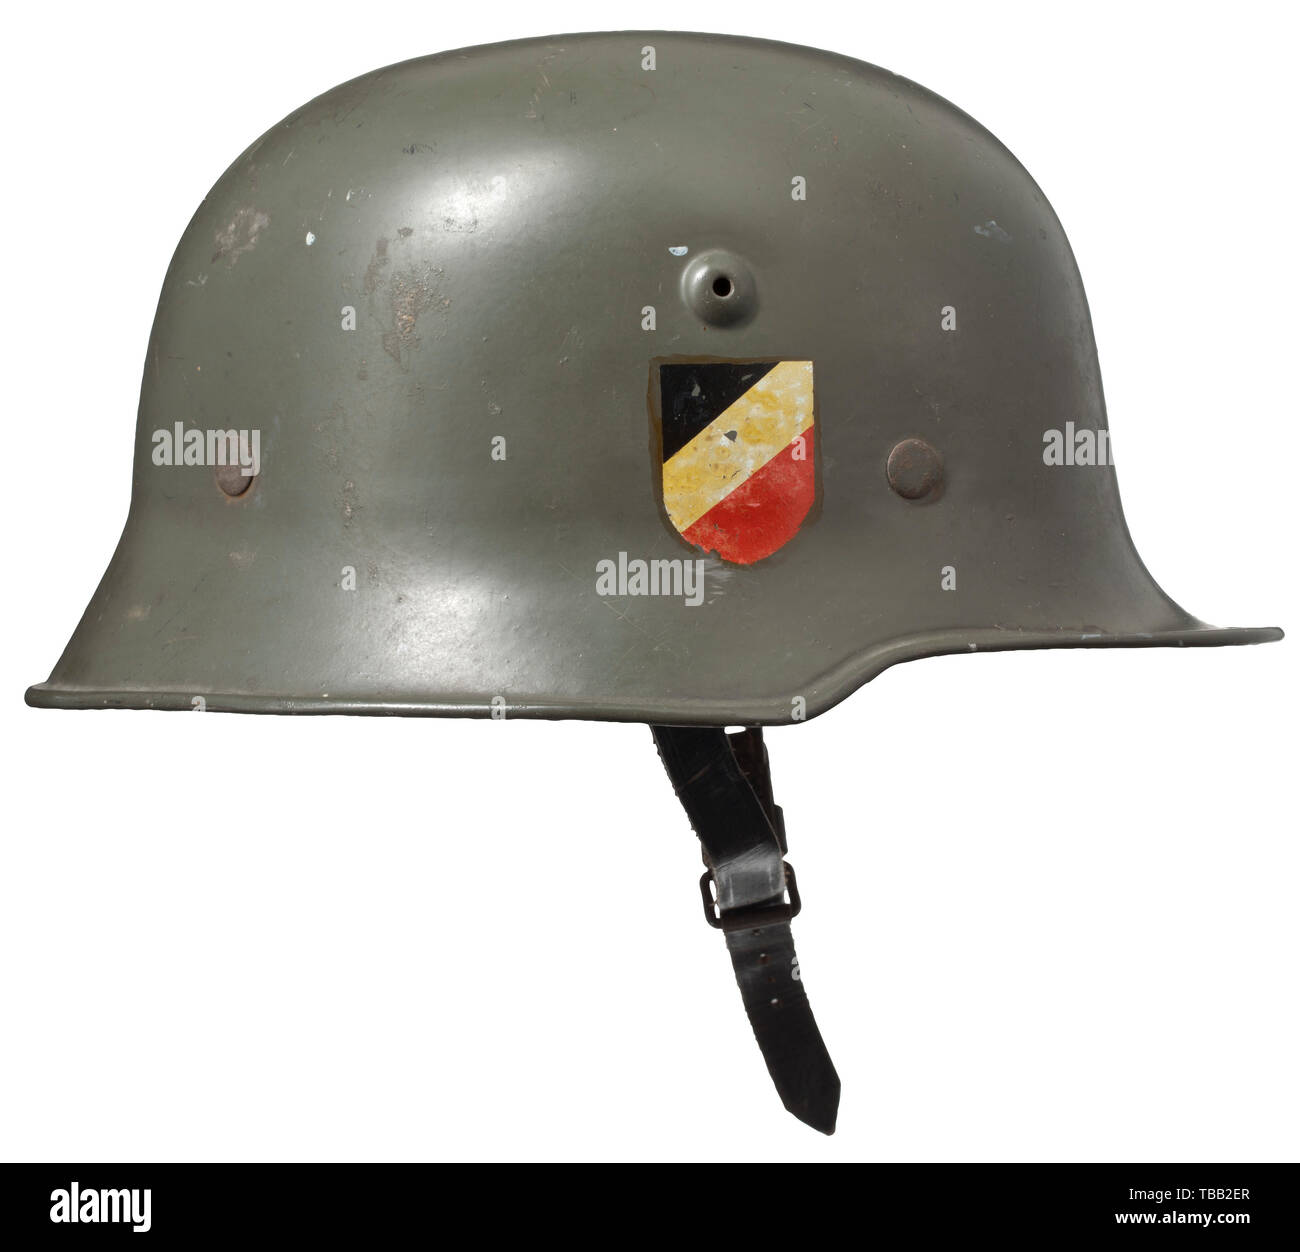 Army military skull helmet Banque d'images détourées - Alamy